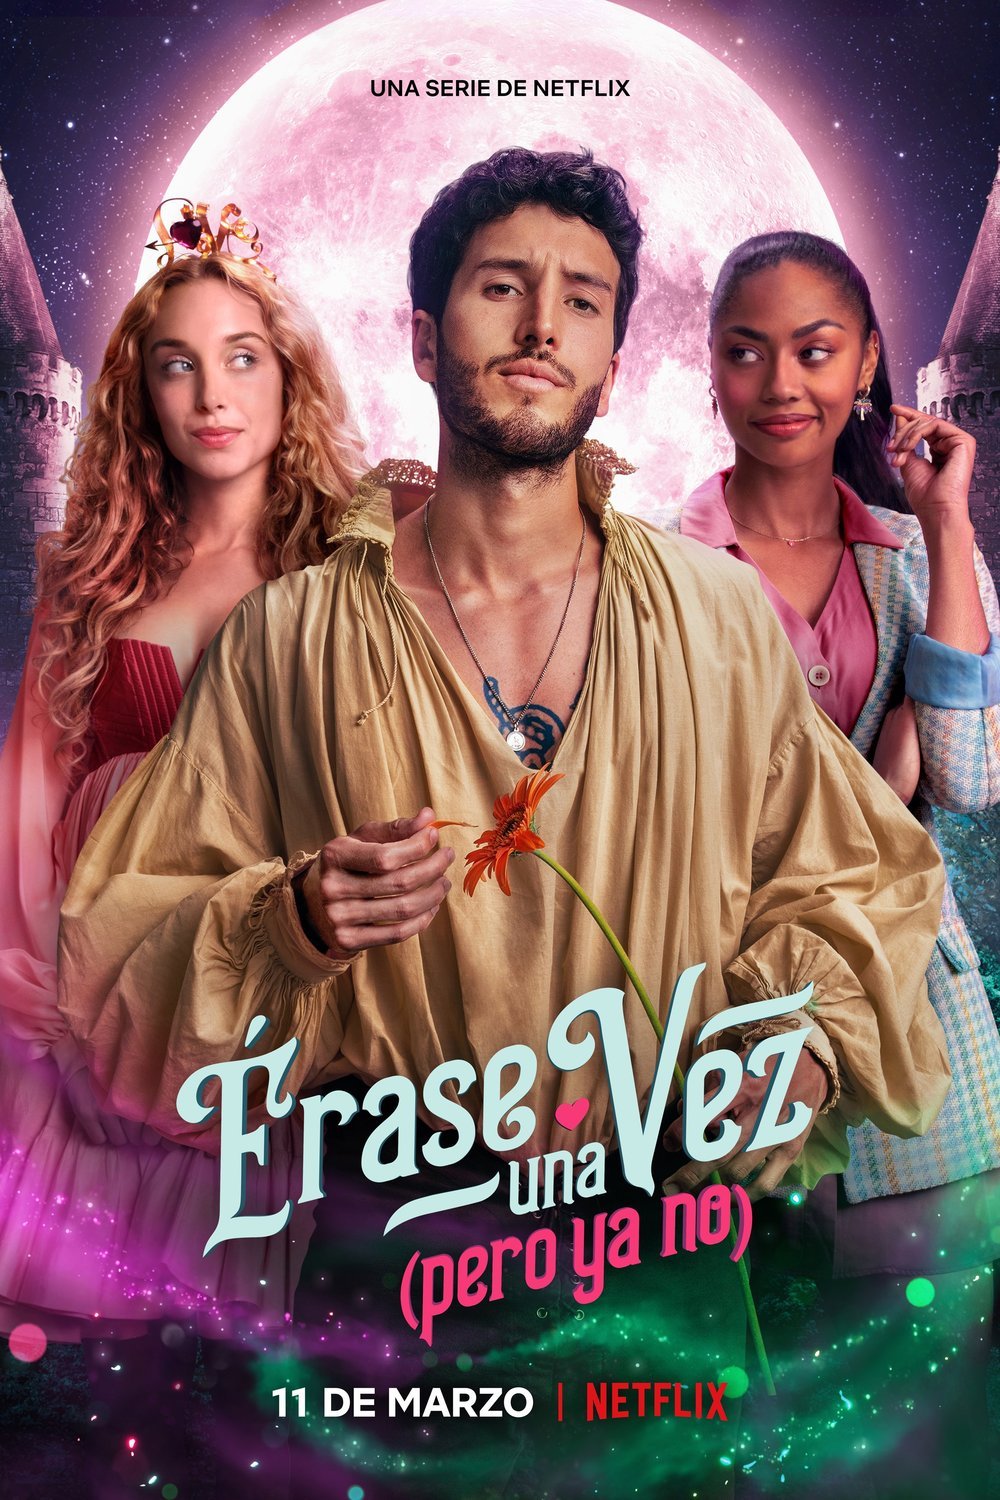 Spanish poster of the movie Érase una vez... pero ya no